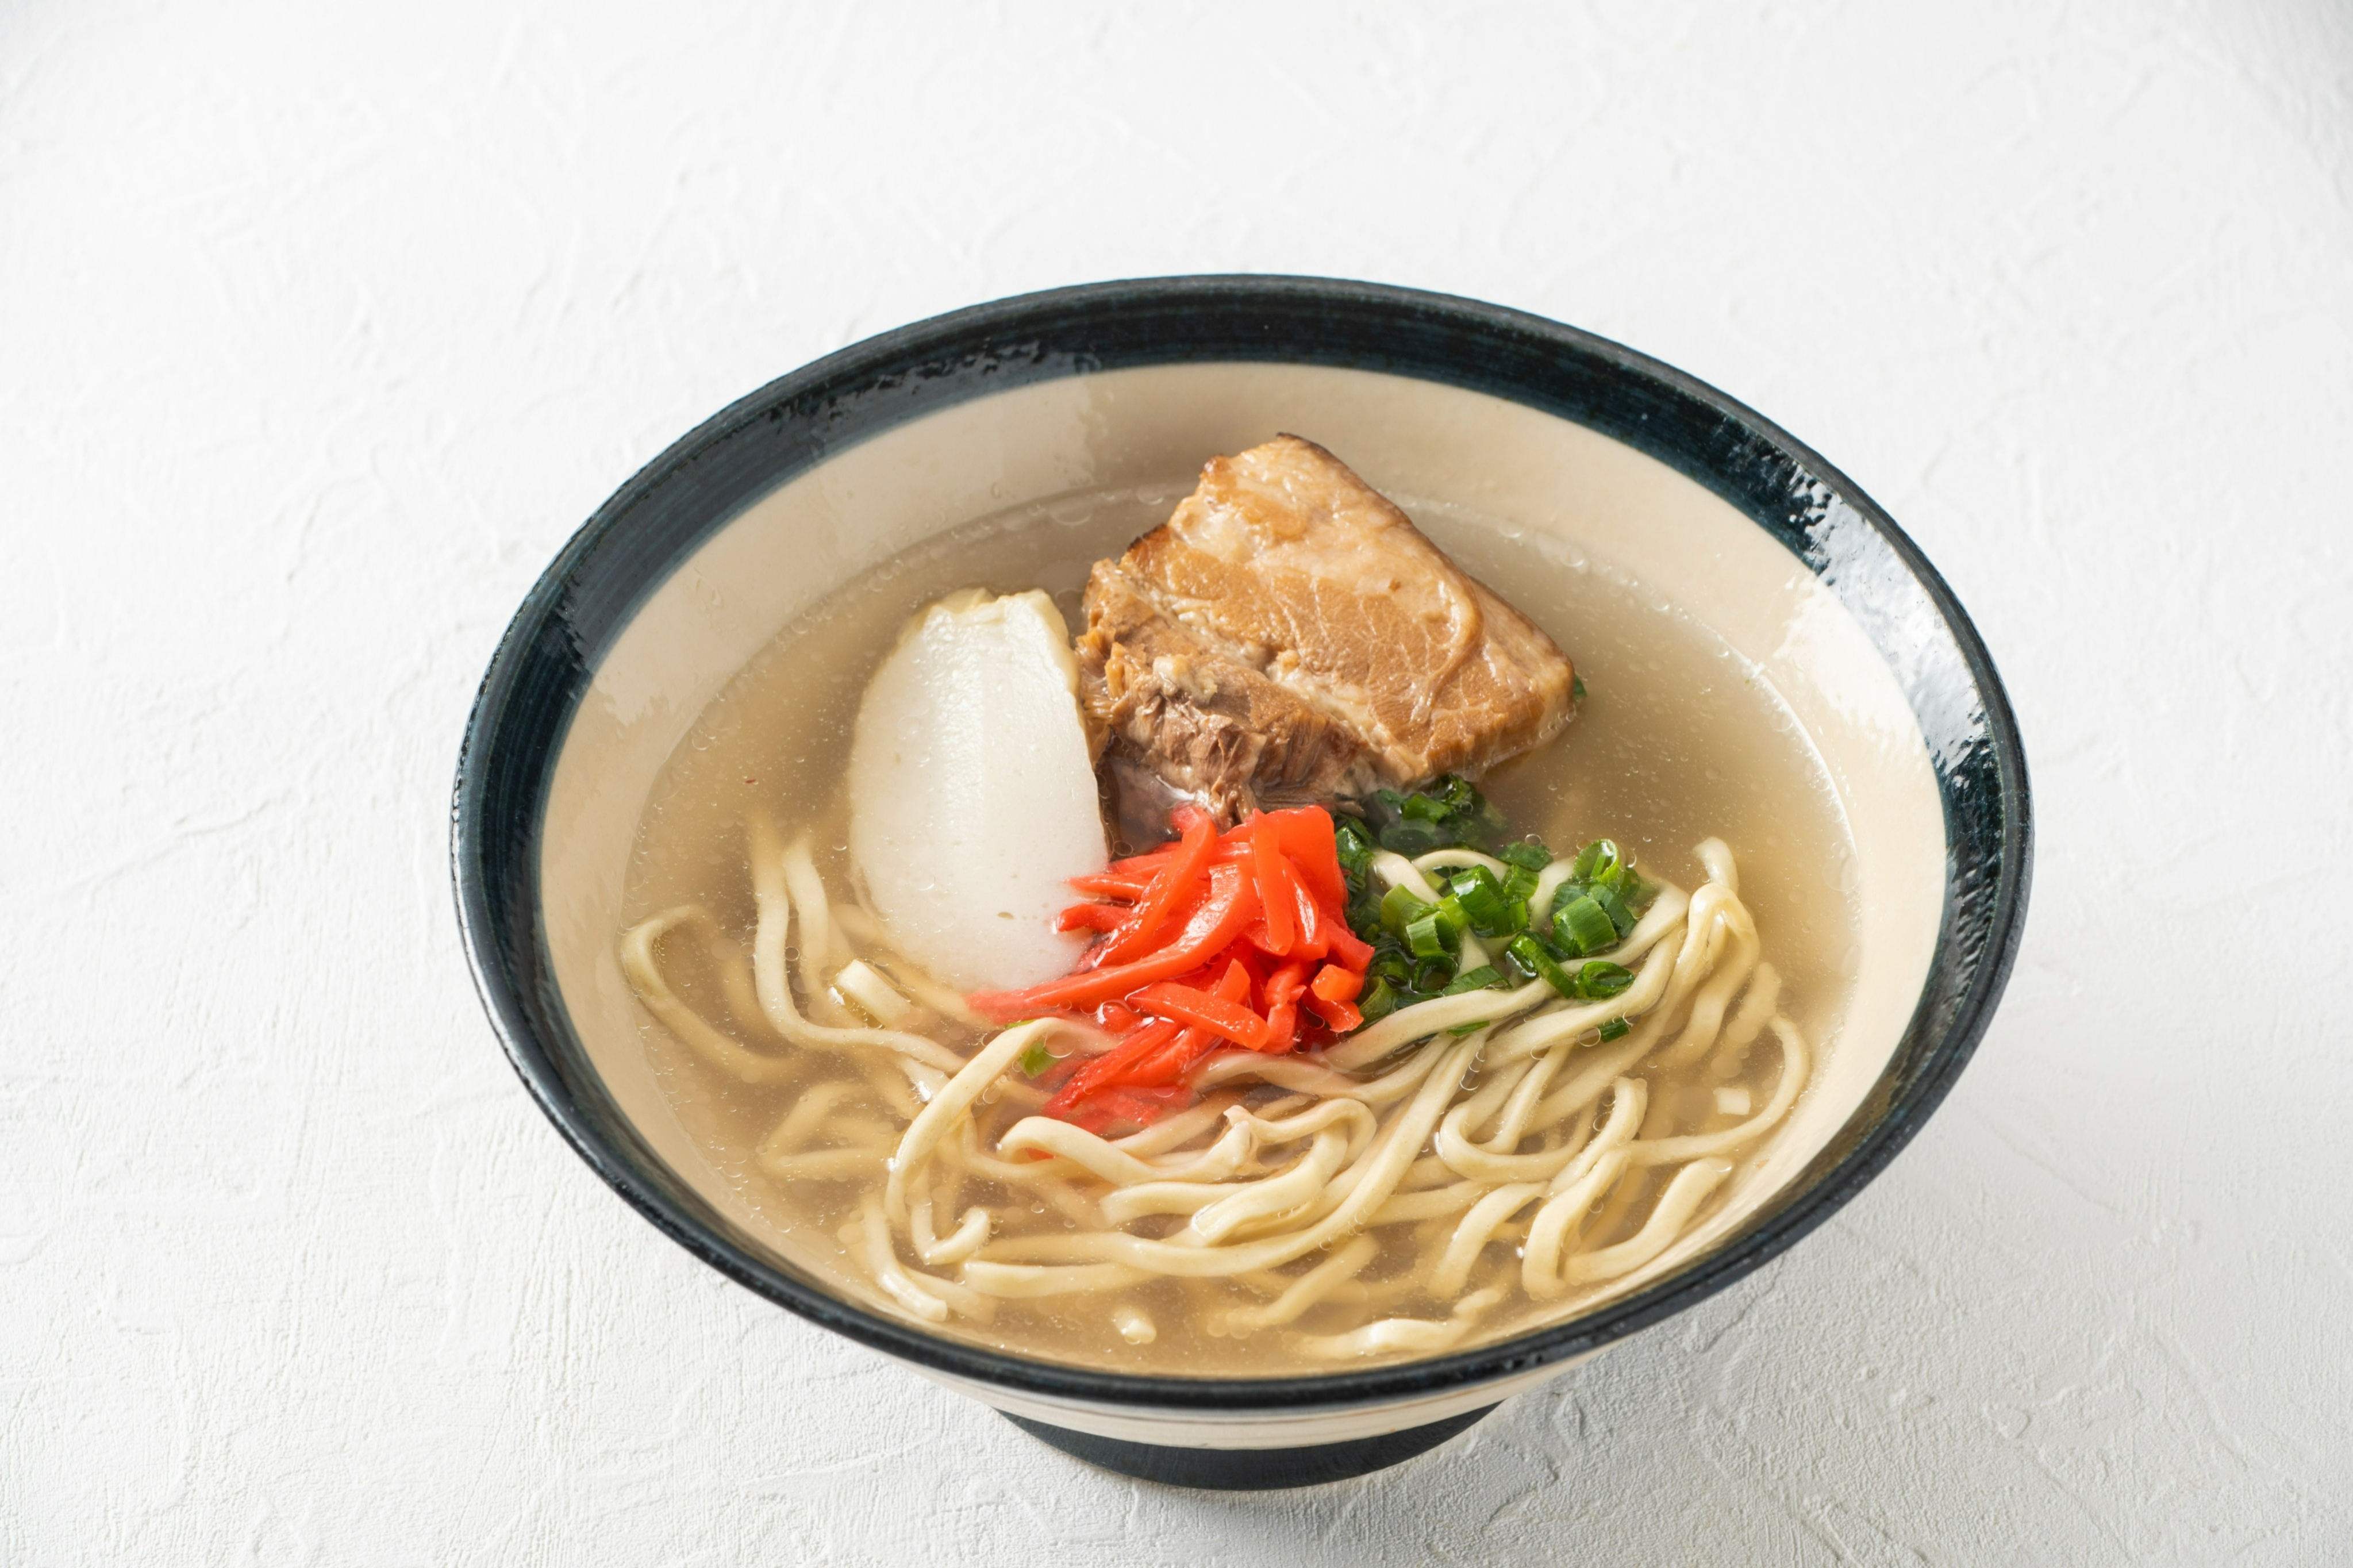 Enjoy Okinawan cuisine with carefully selected Okinawan ingredients. We recommend Shabu-Shabu Set Menu.